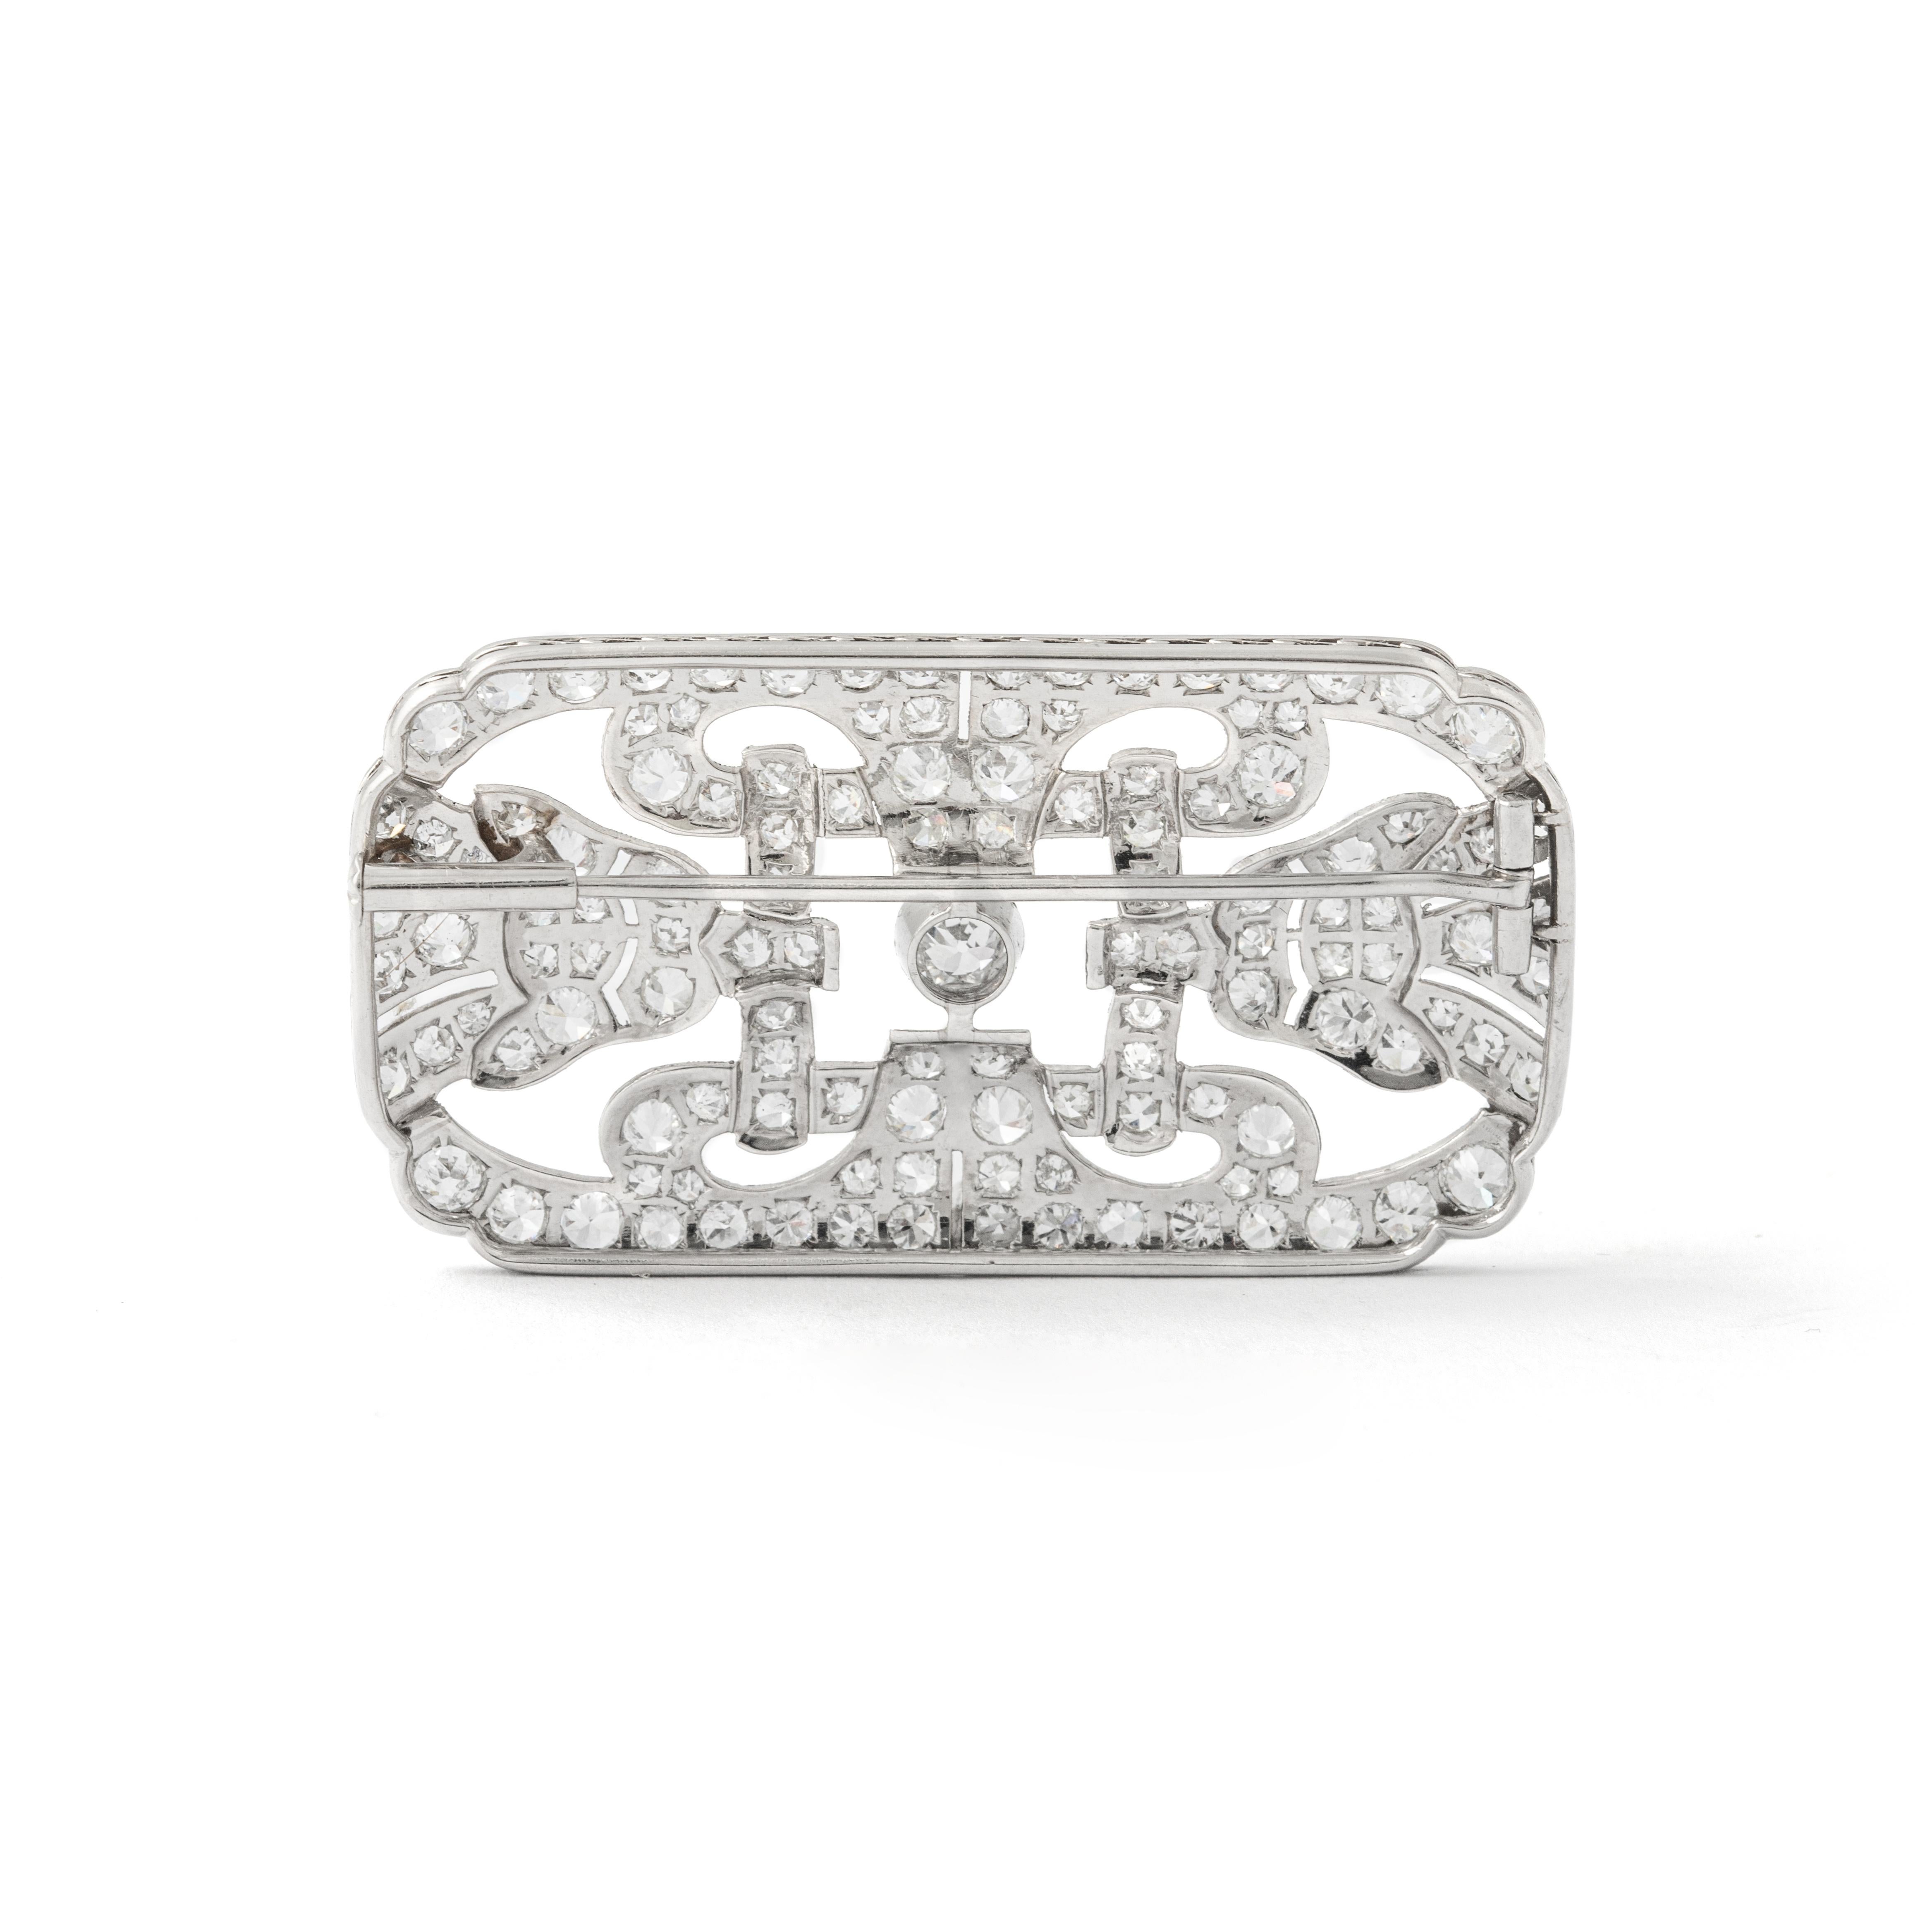 Art Deco Diamant-Brosche.
Um 1930.

Gesamtlänge: ca. 5,00 Zentimeter / 1,97 Zoll.
Gesamtbreite: ca. 2,80 Zentimeter / 1,10 Zoll.

Gesamtgewicht: 13,18 Gramm.
